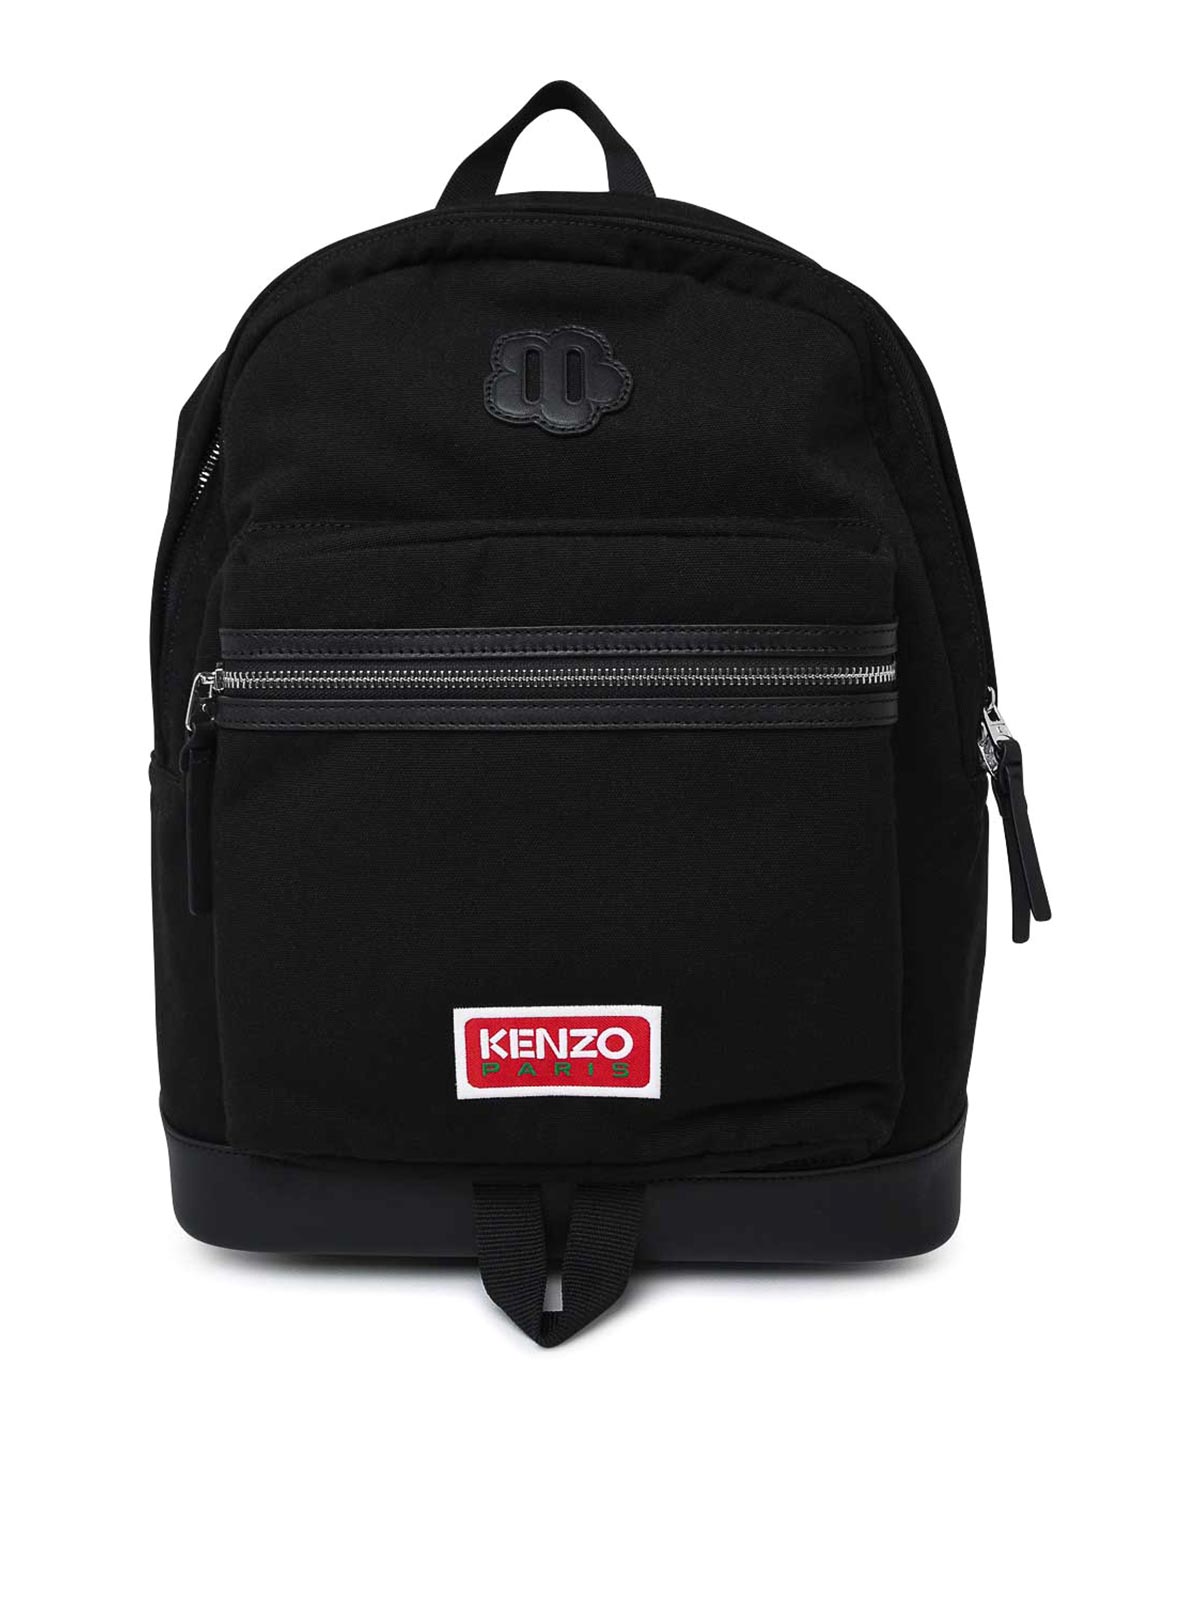 Kenzo Written Logo Backpack In Black